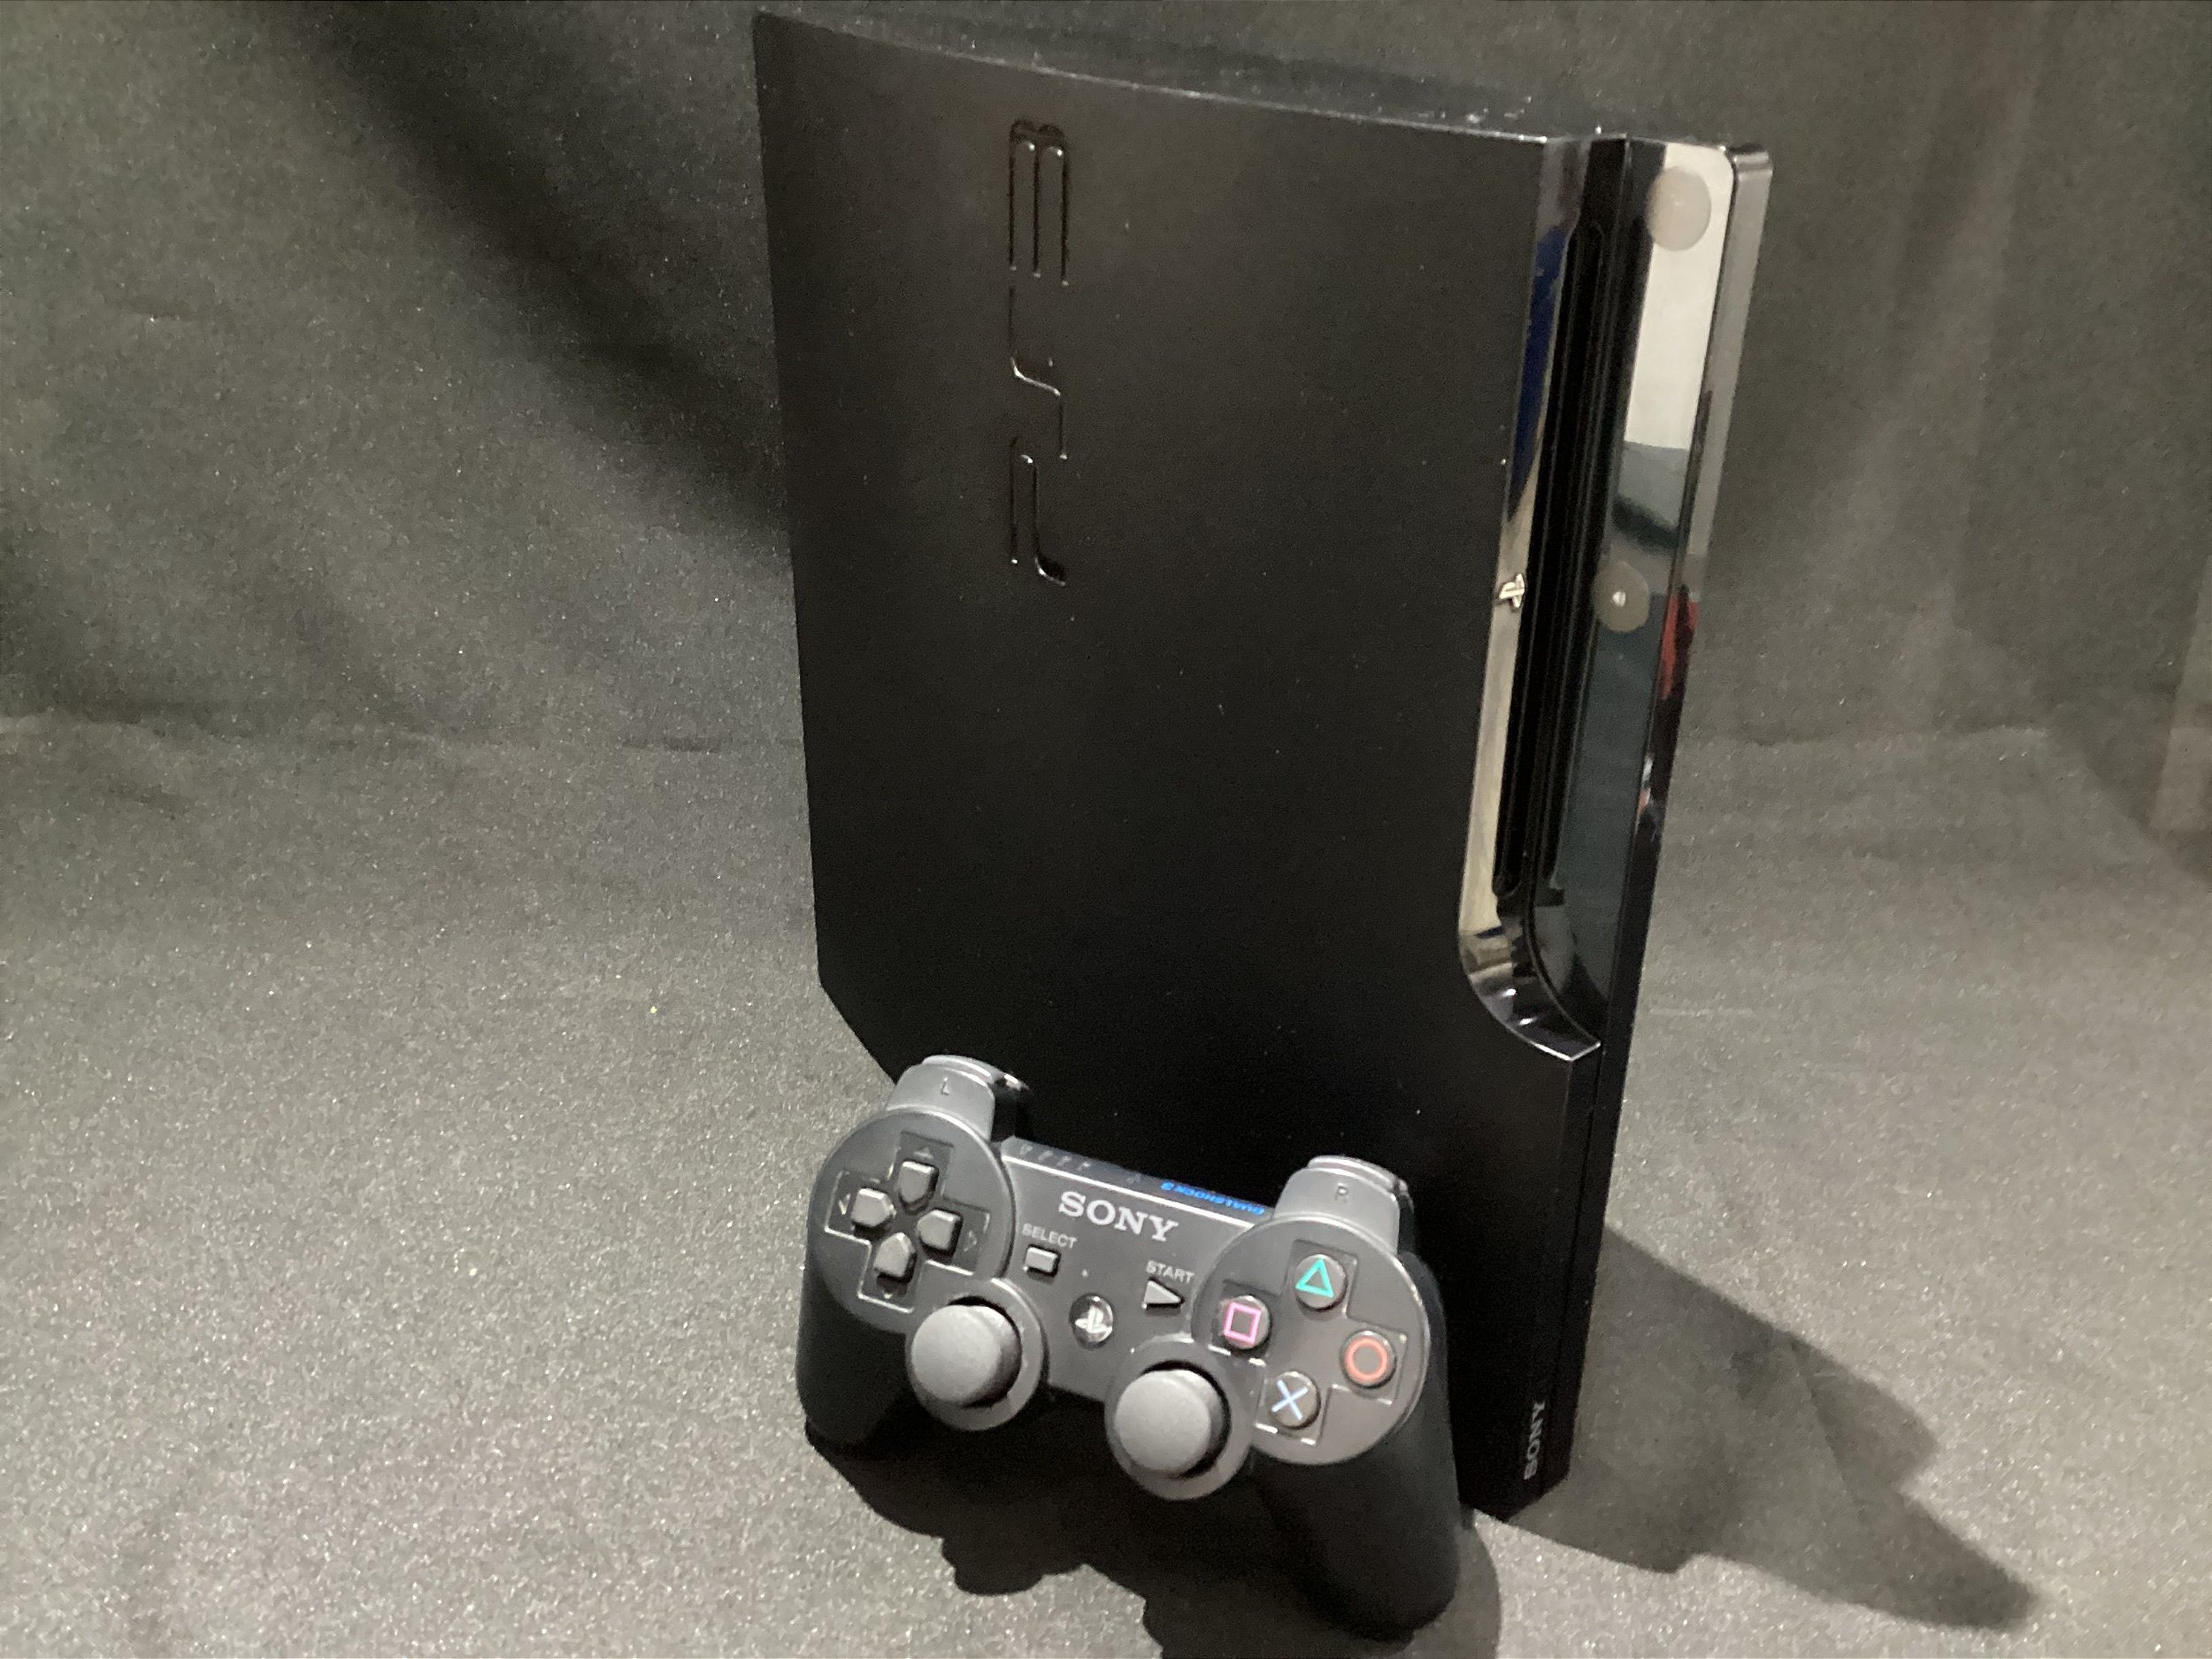 Console Sony PS3 Playstation 3 Slim 160GB com 1 Controle sem Fio e